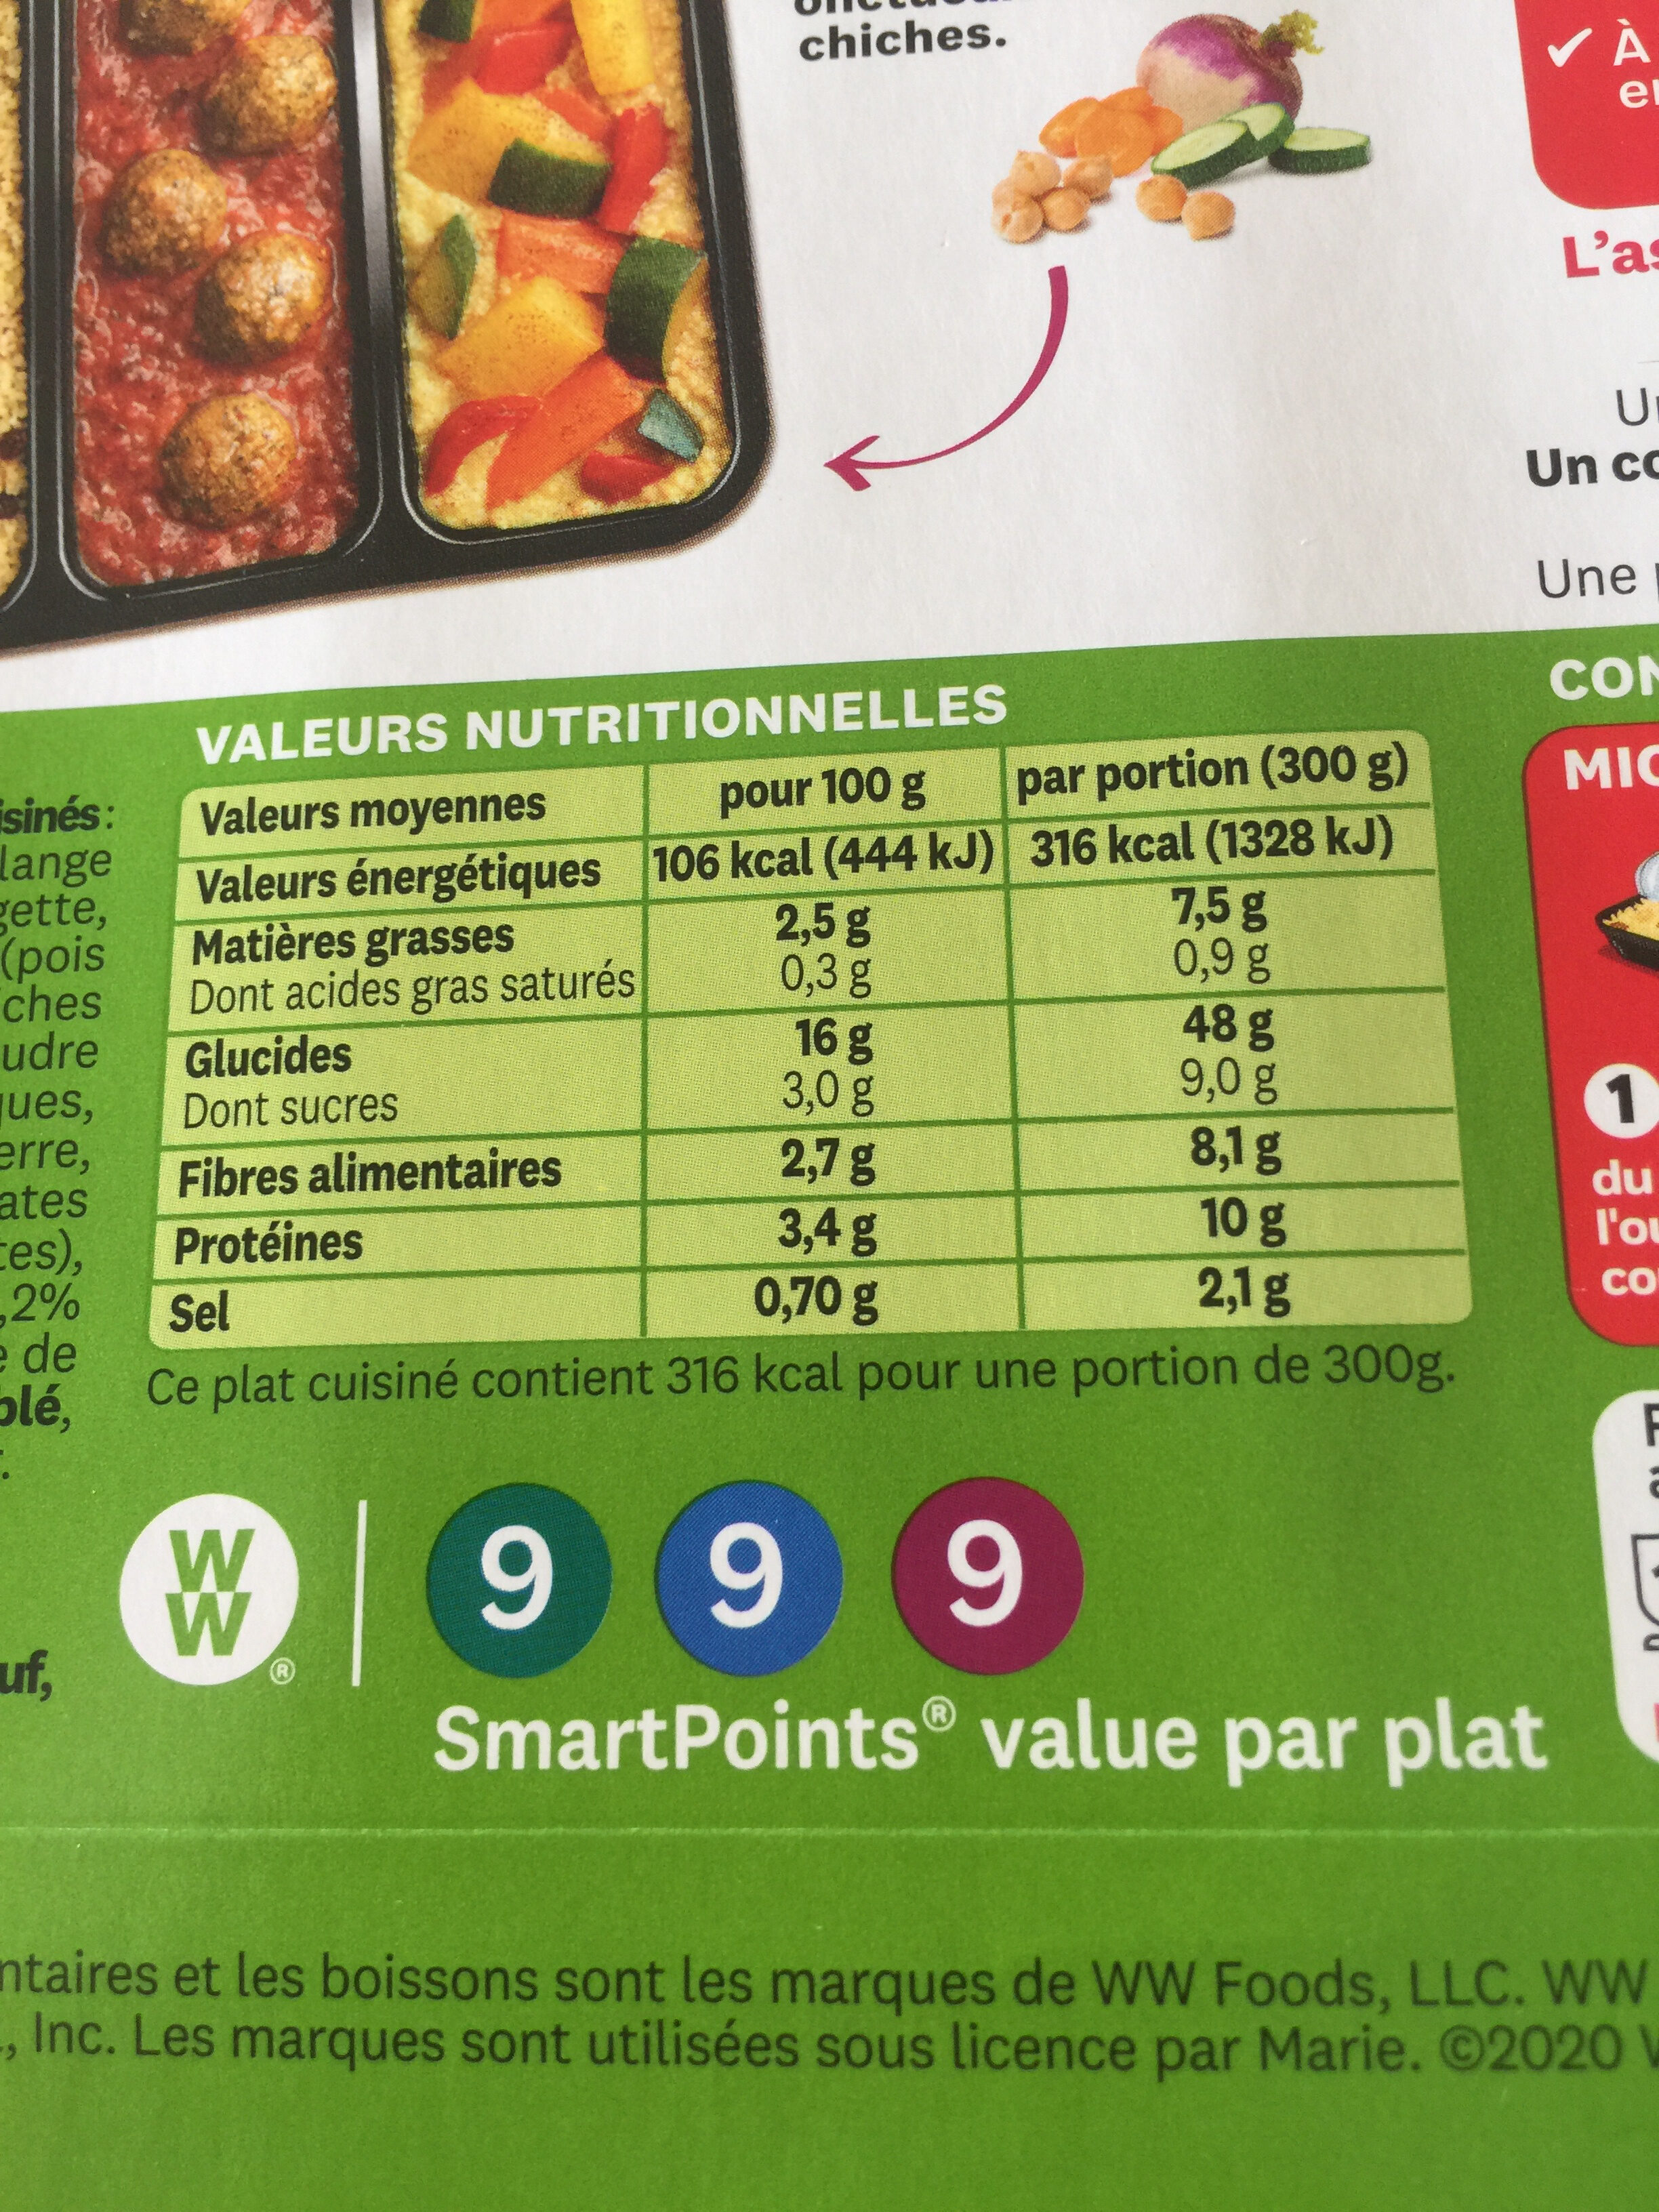 Couscous falafels, semoule aux raisins et légumes frais cuisinés - Nutrition facts - fr